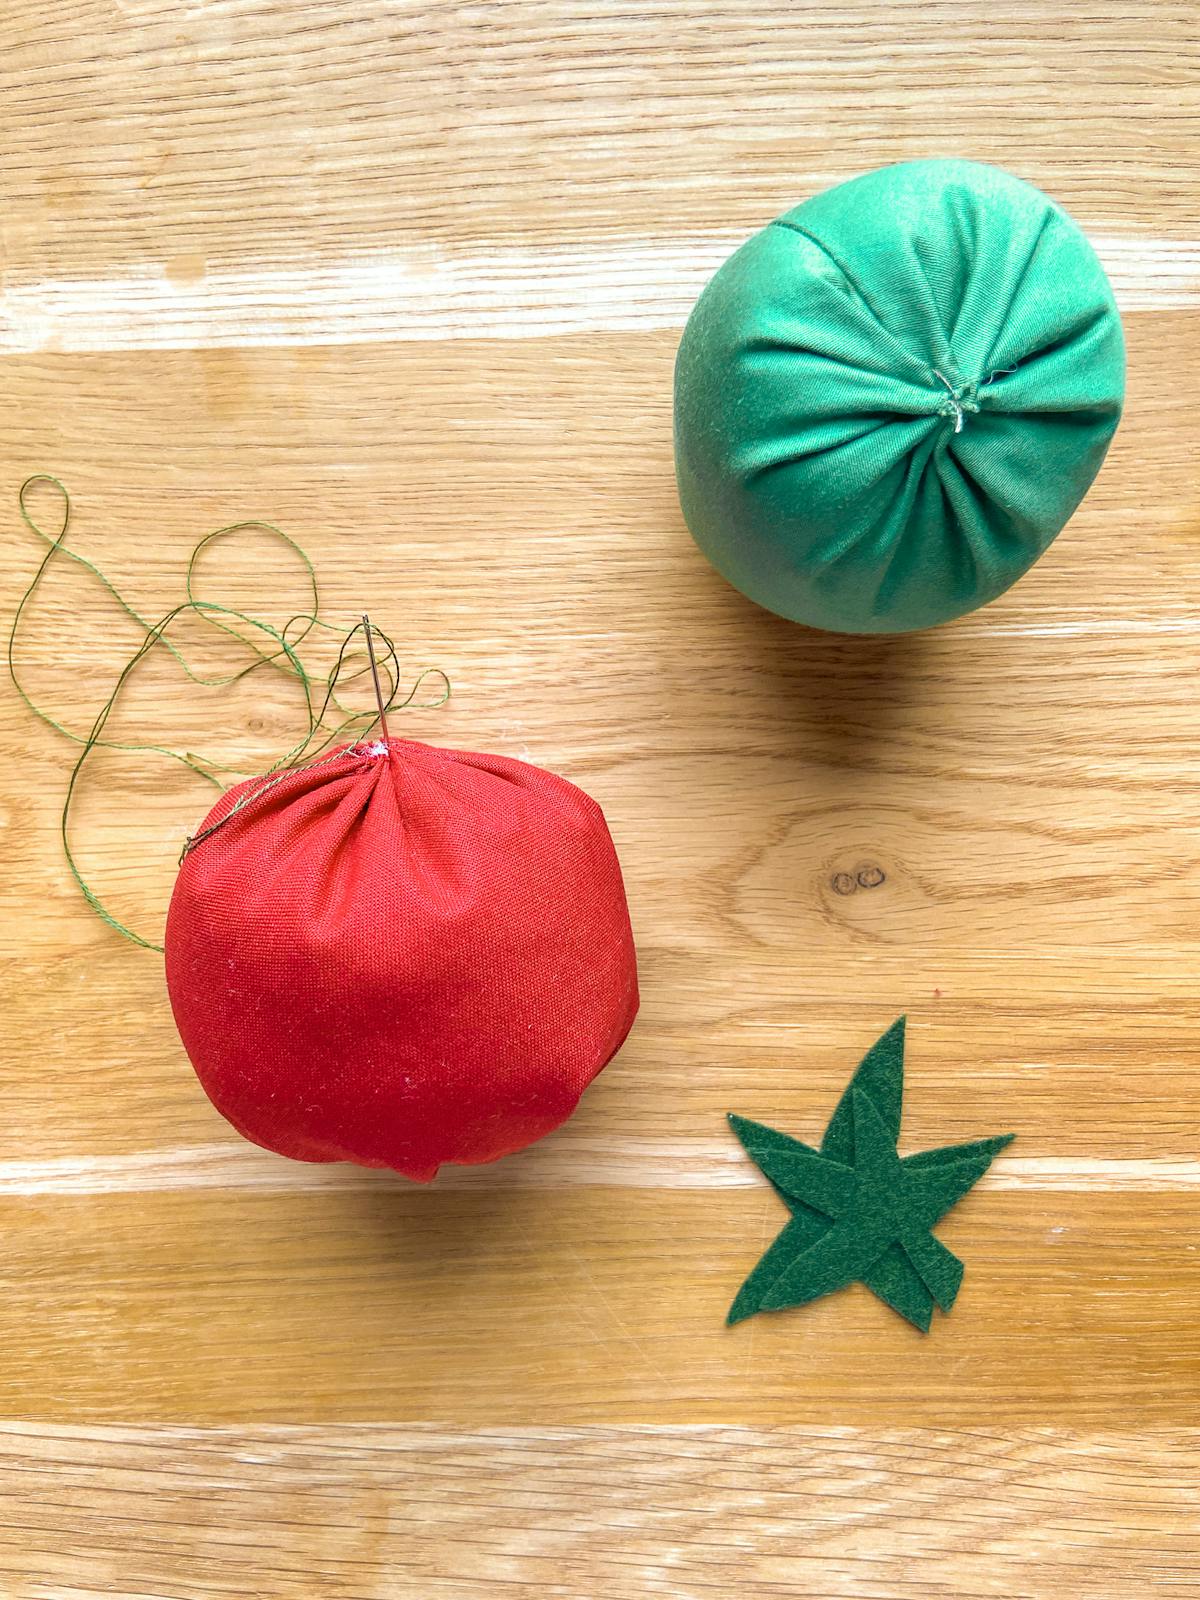  Fertigstellung der DIY-Tomaten-Nadelkissen in Rot und Grün. Hinzufügen von Segmenten.